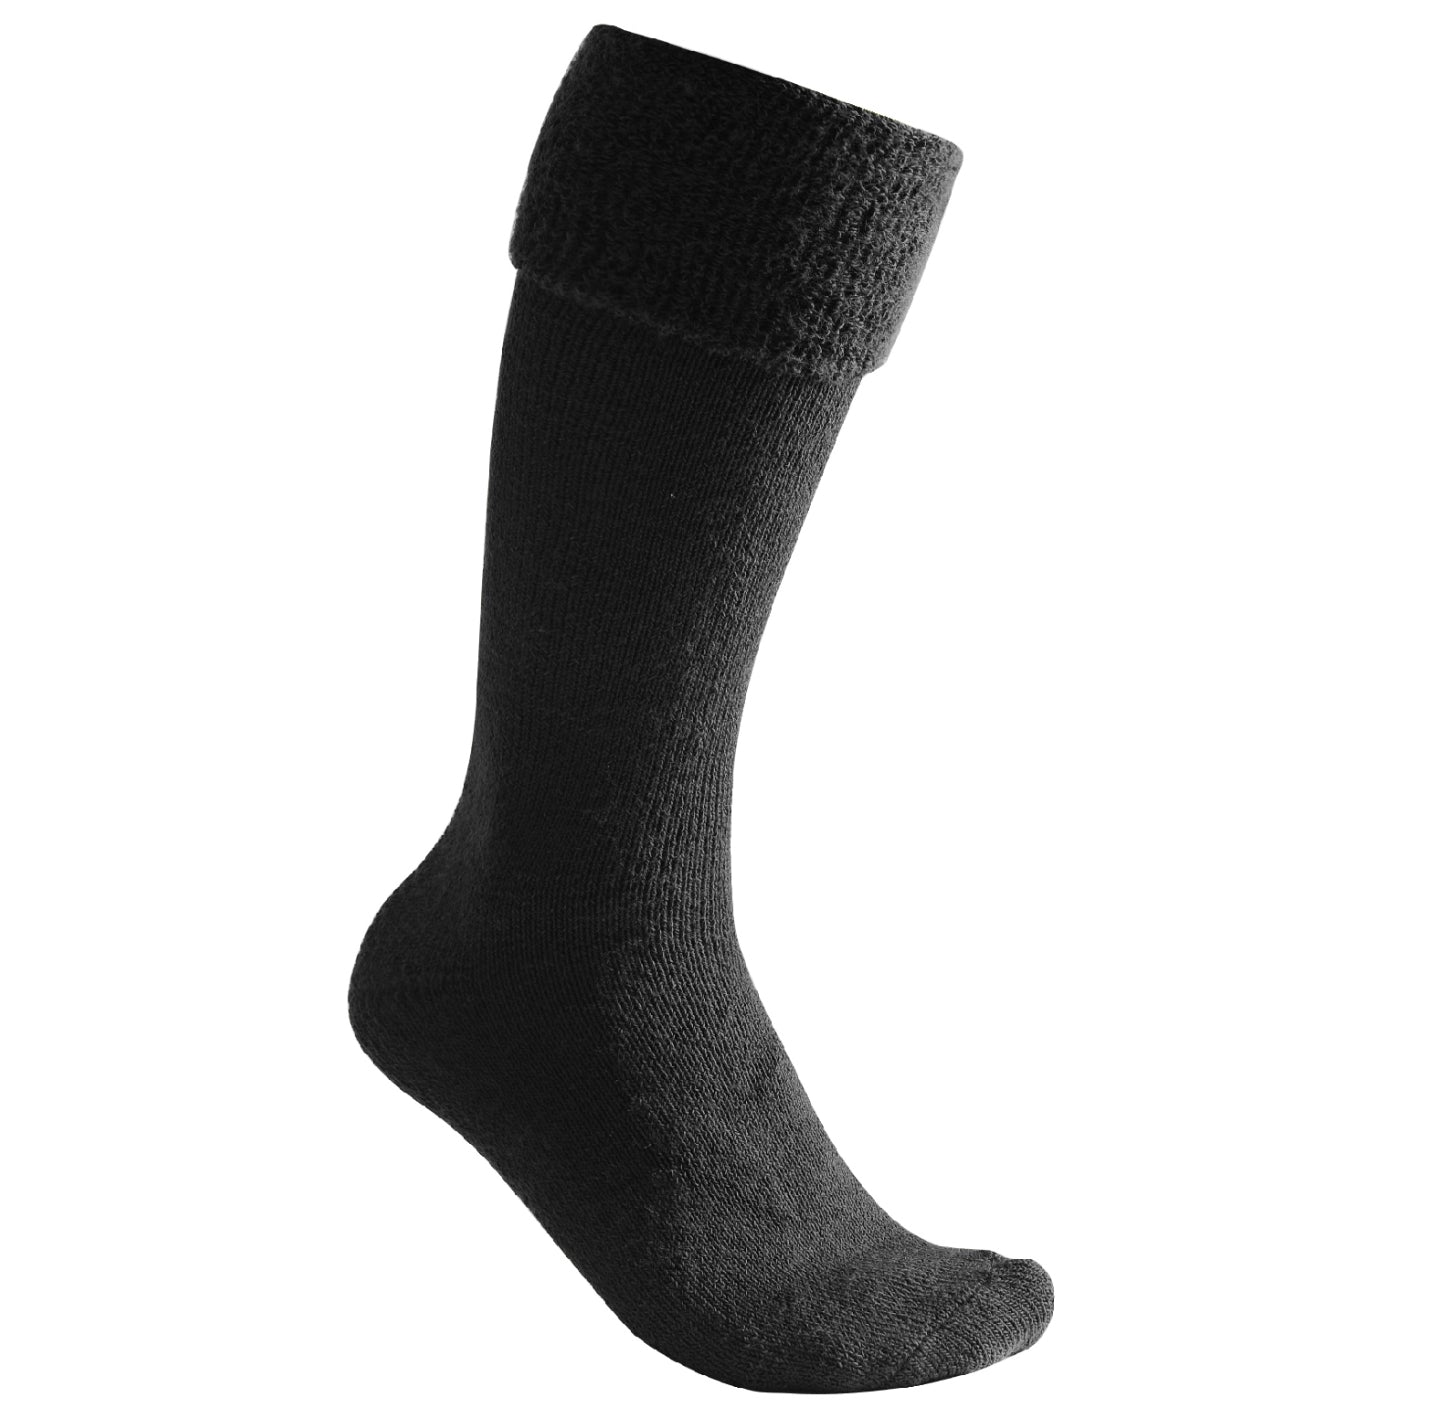 Woolpower Socks 45-48 EU / Black Woolpower Socks Knee-high 600 g